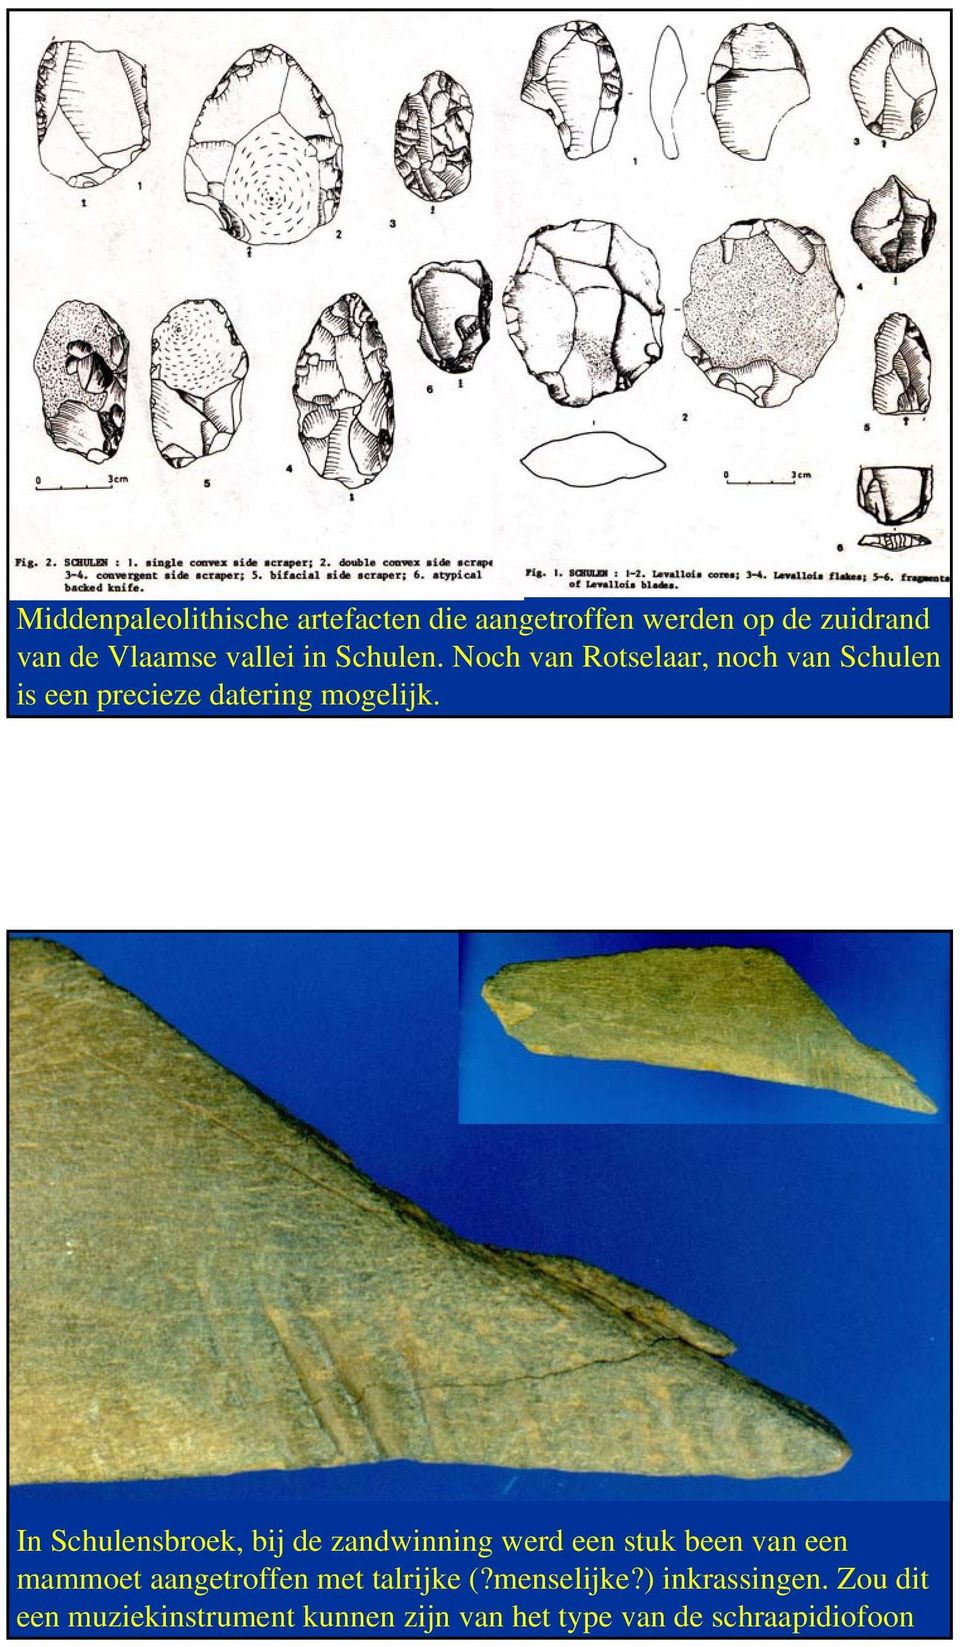 In Schulensbroek, bij de zandwinning werd een stuk been van een mammoet aangetroffen met